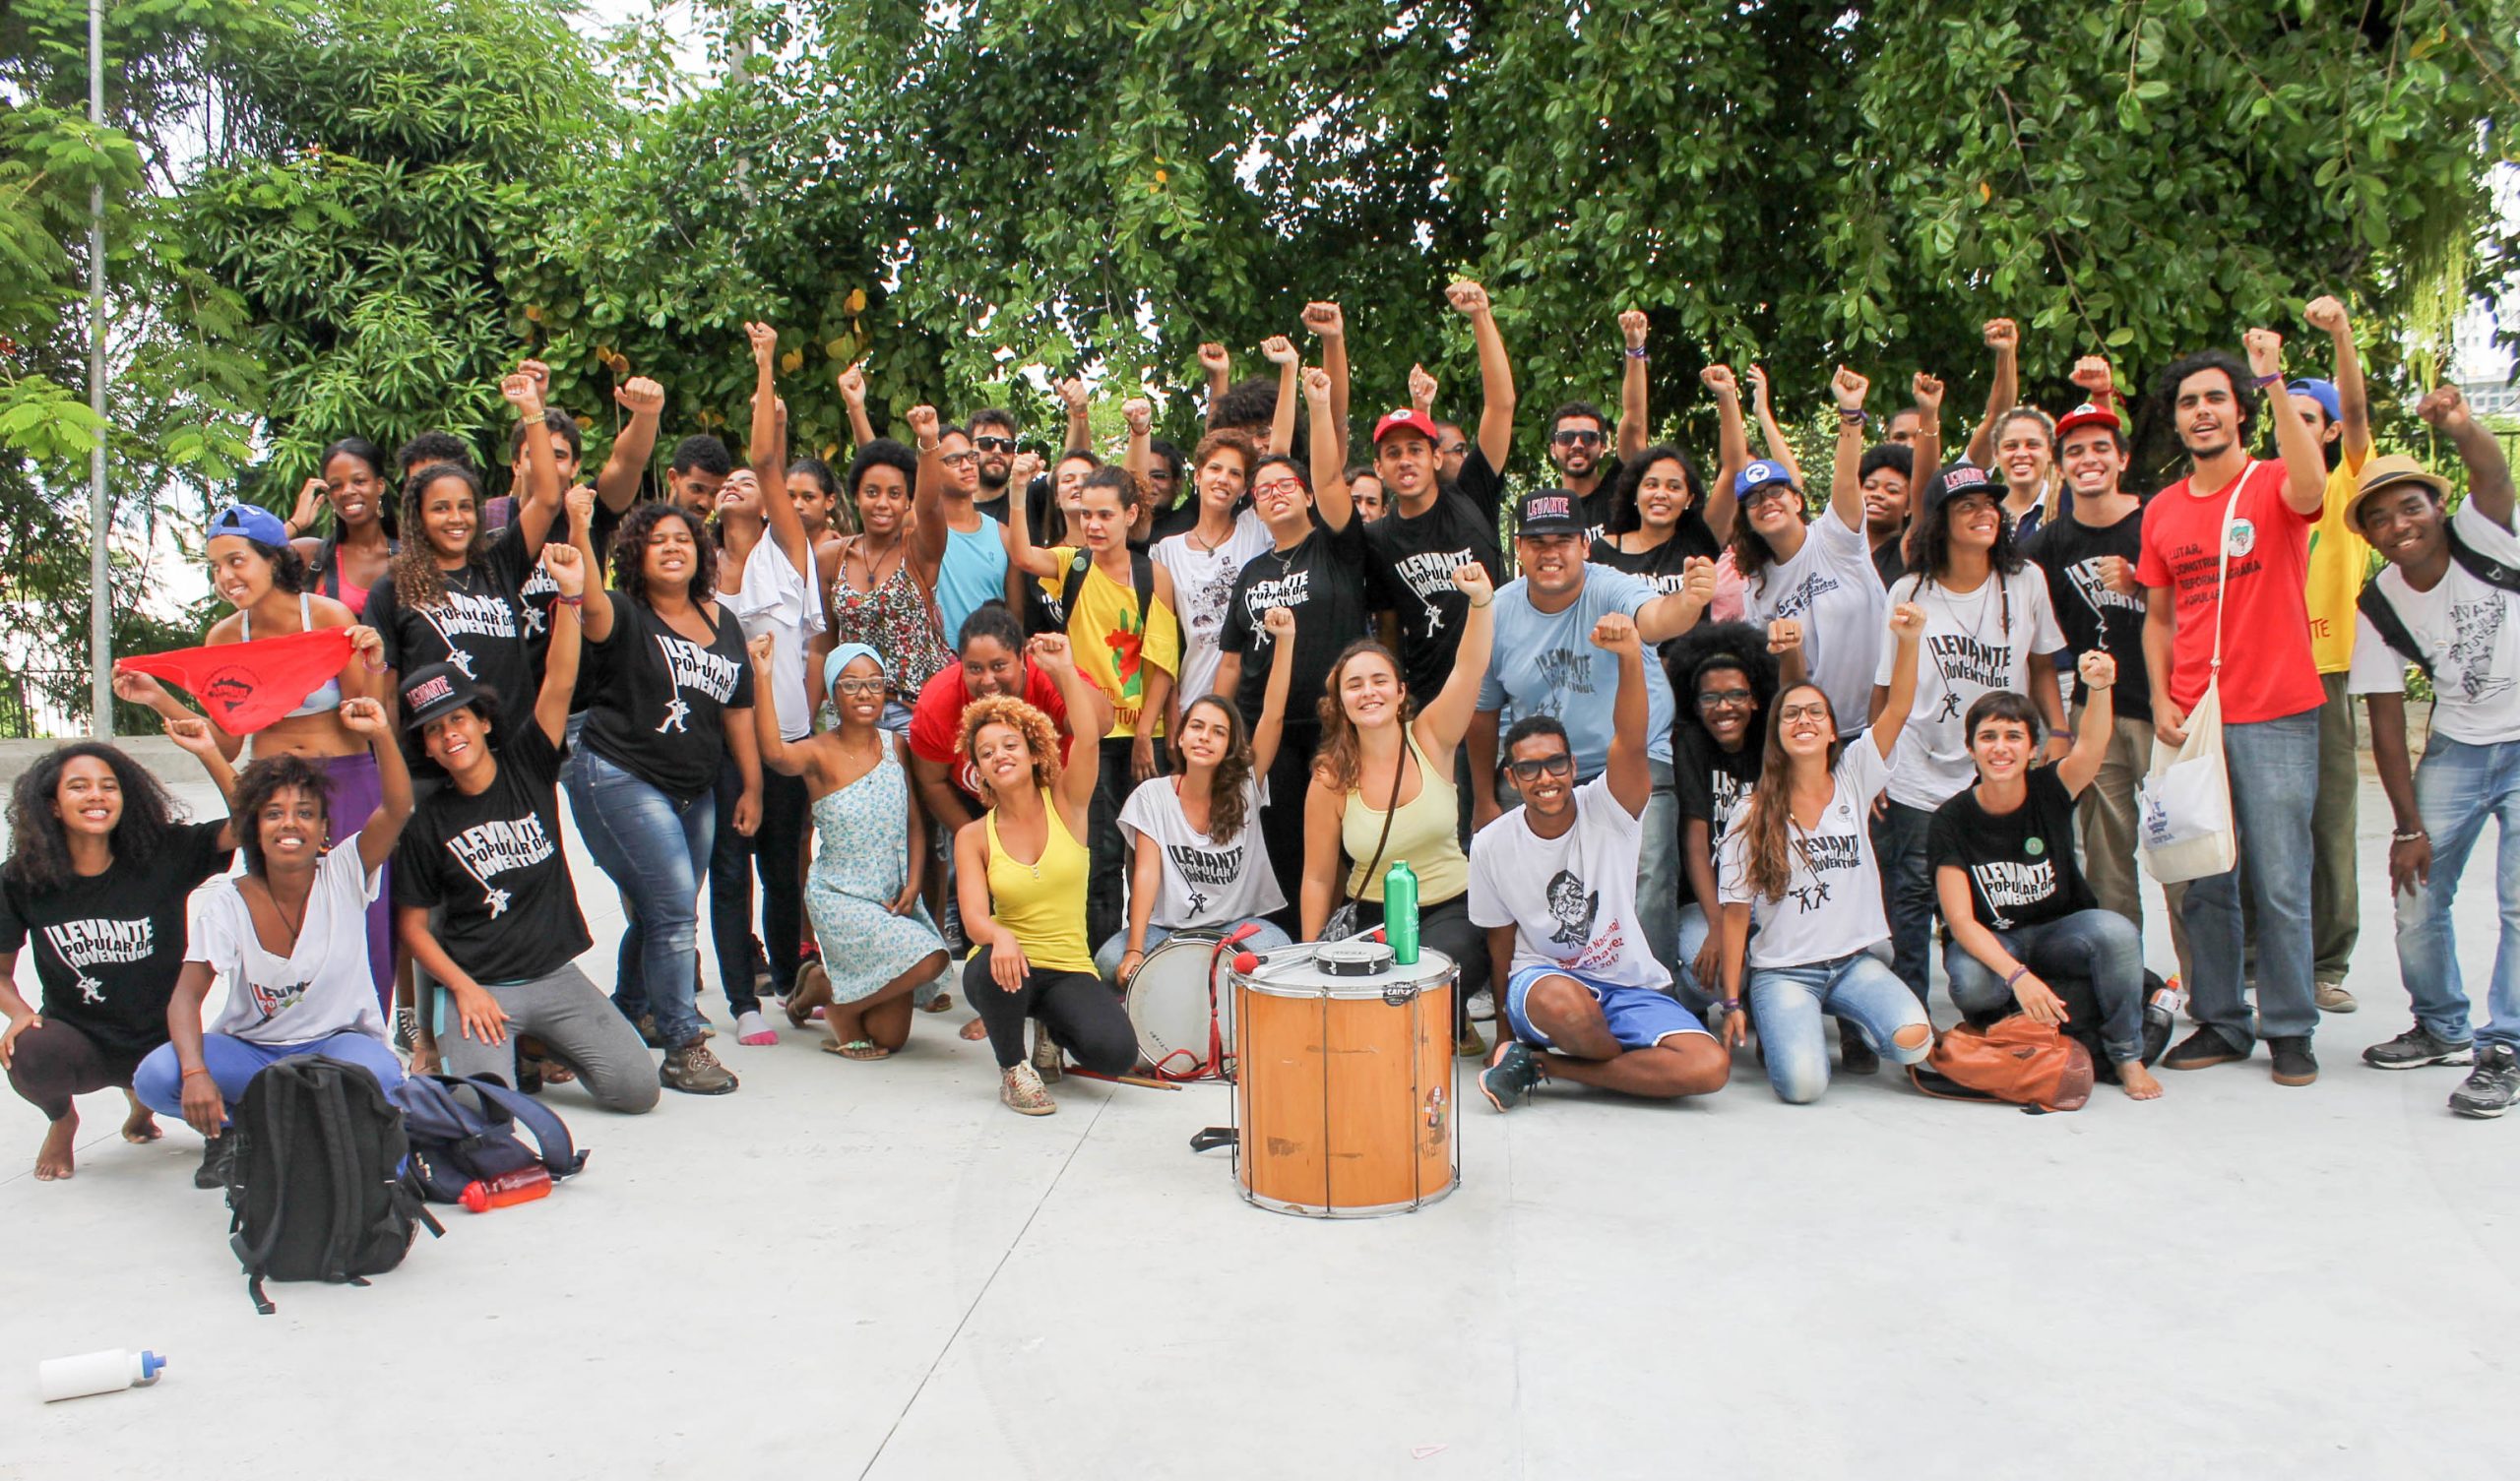 Juventude abre semestre com Jornada de Lutas na Universidade Federal da Bahia